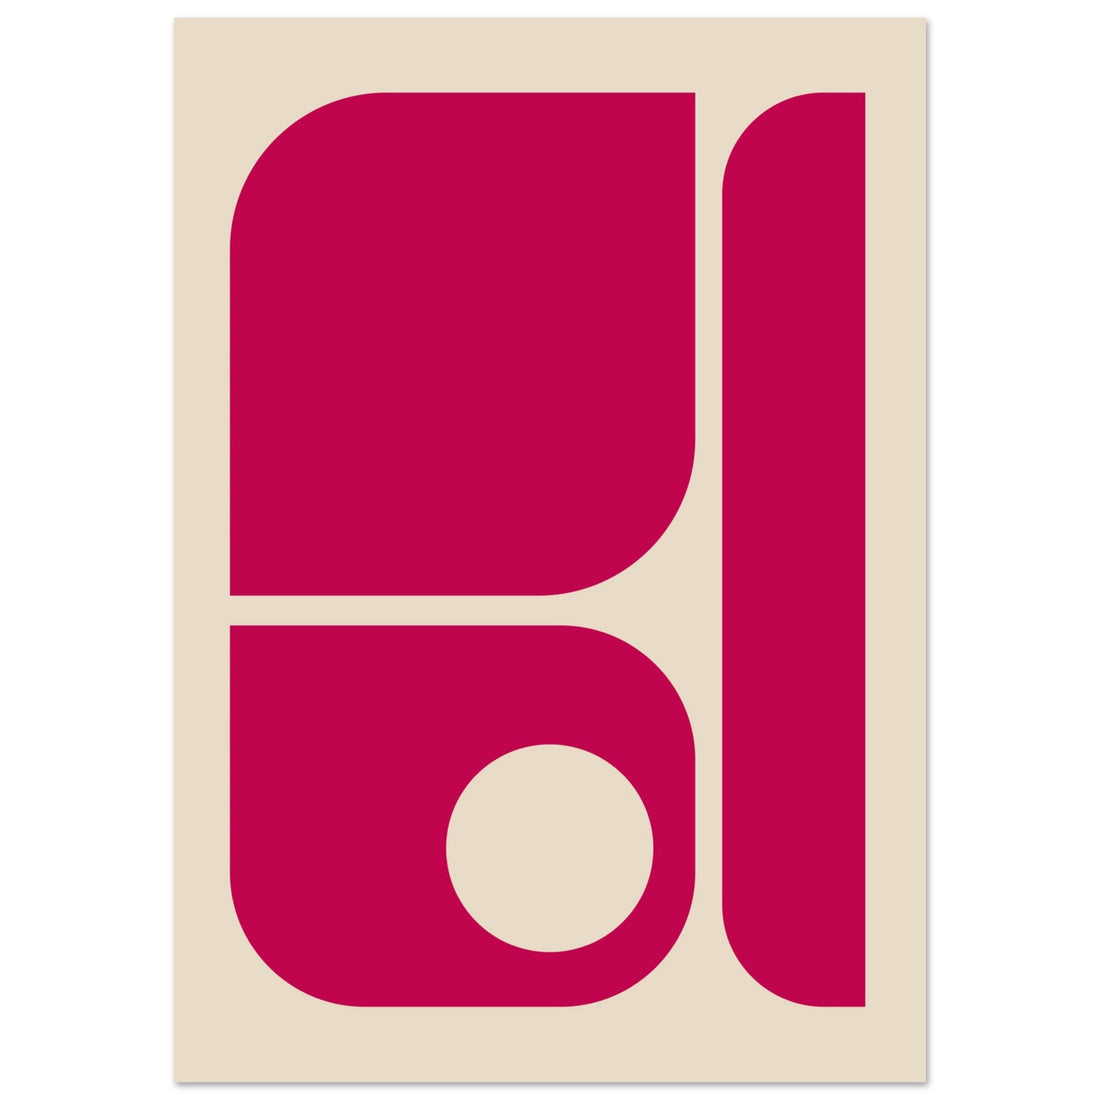 Fuchsia Pink Bauhaus Poster, No. 121, Bauhaus Art, MODERN ART, Modern Geometric, #illieeart